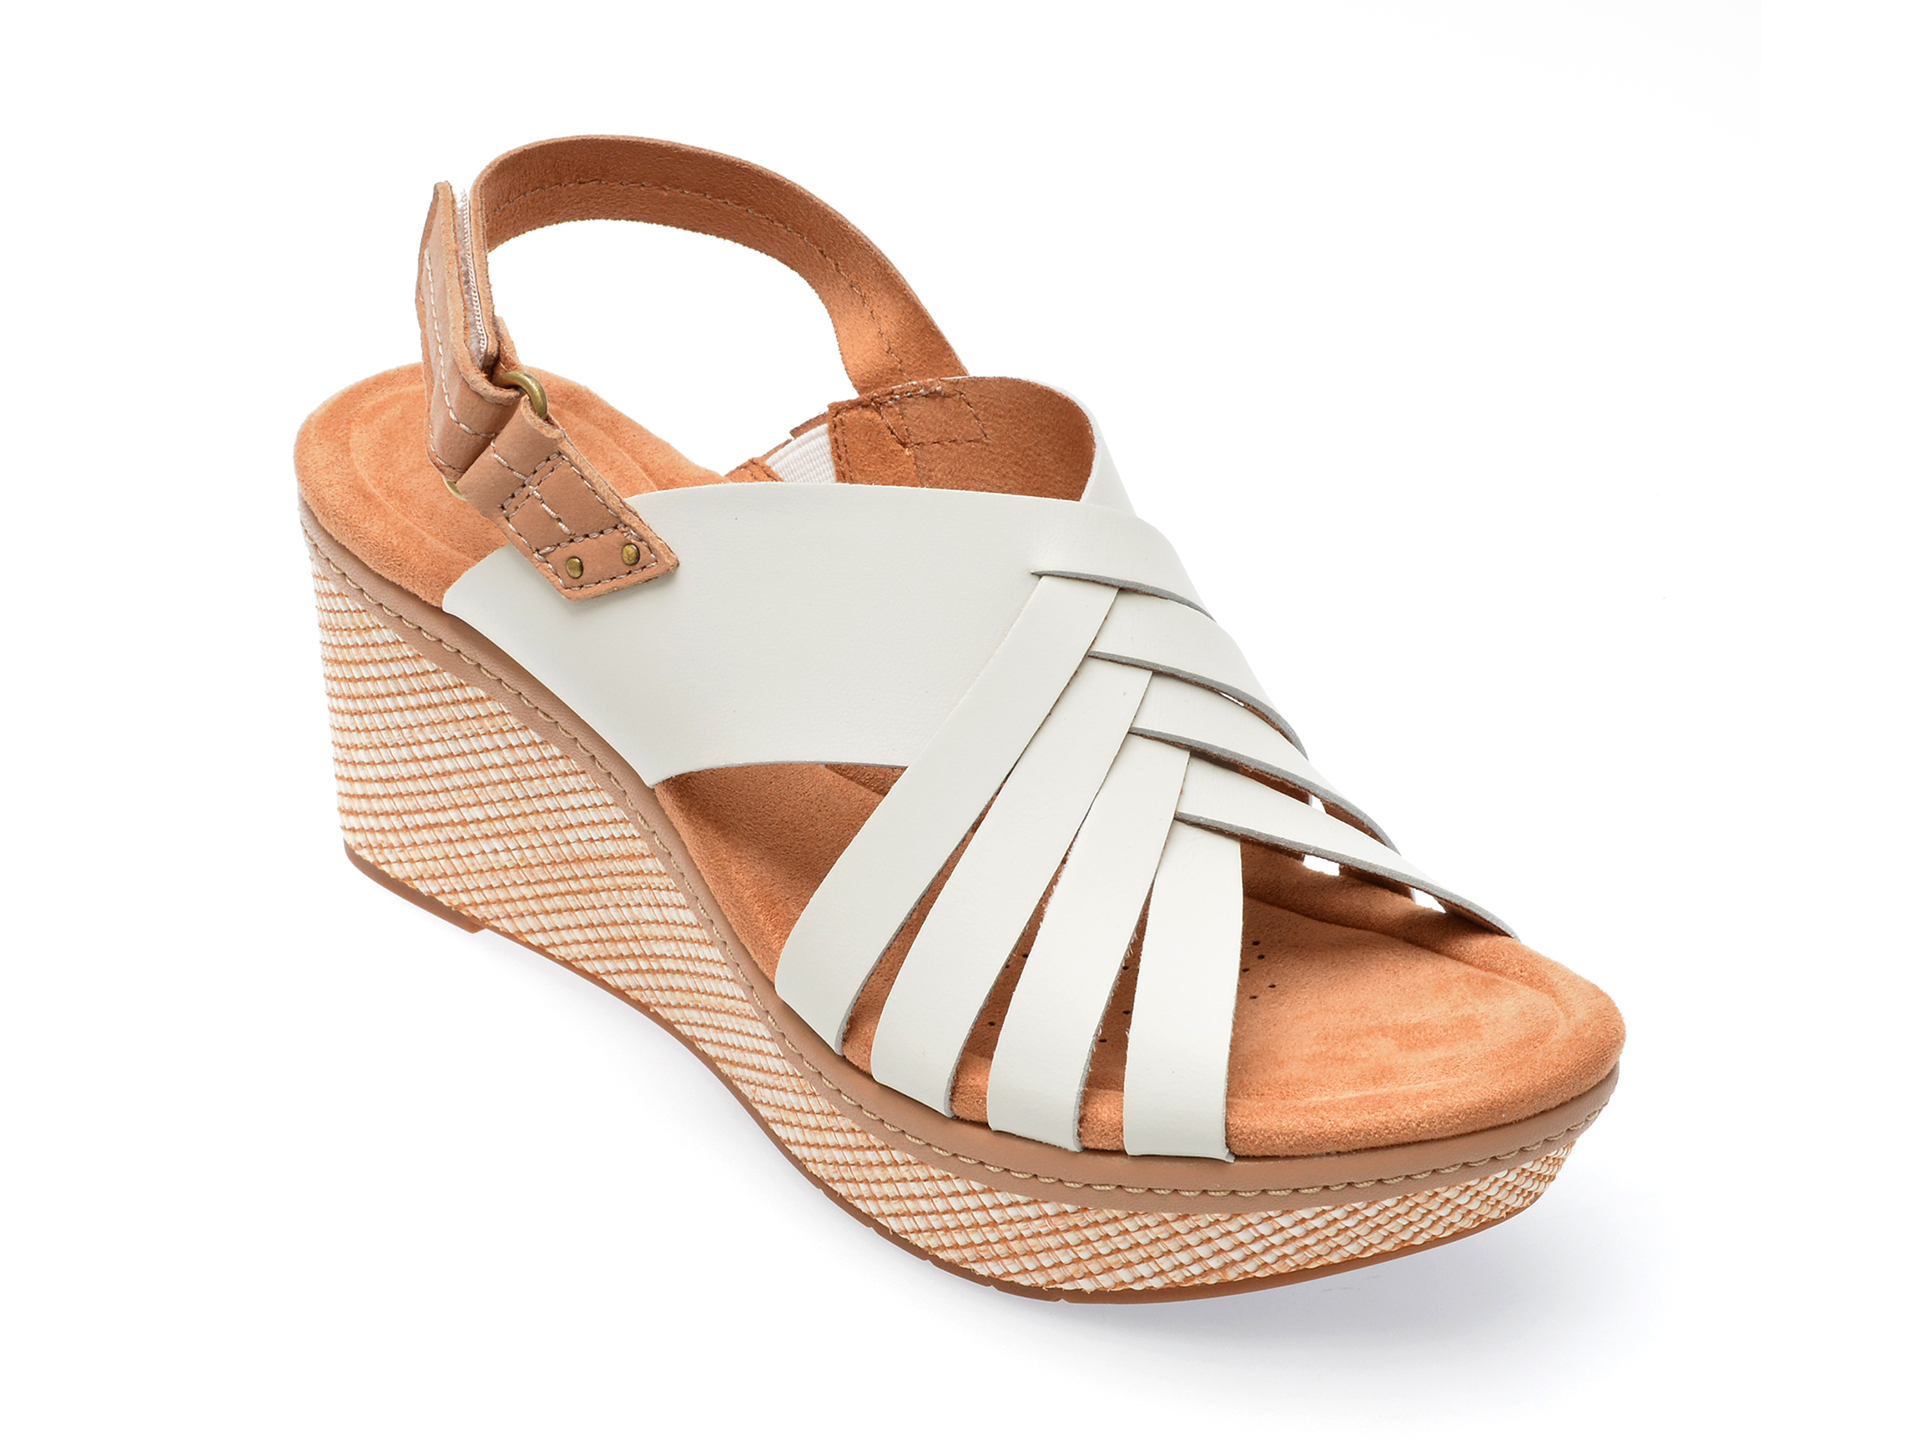 Sandale CLARKS albe, ELLERI GRACE 13-N, din piele naturala Answear 2023-09-28